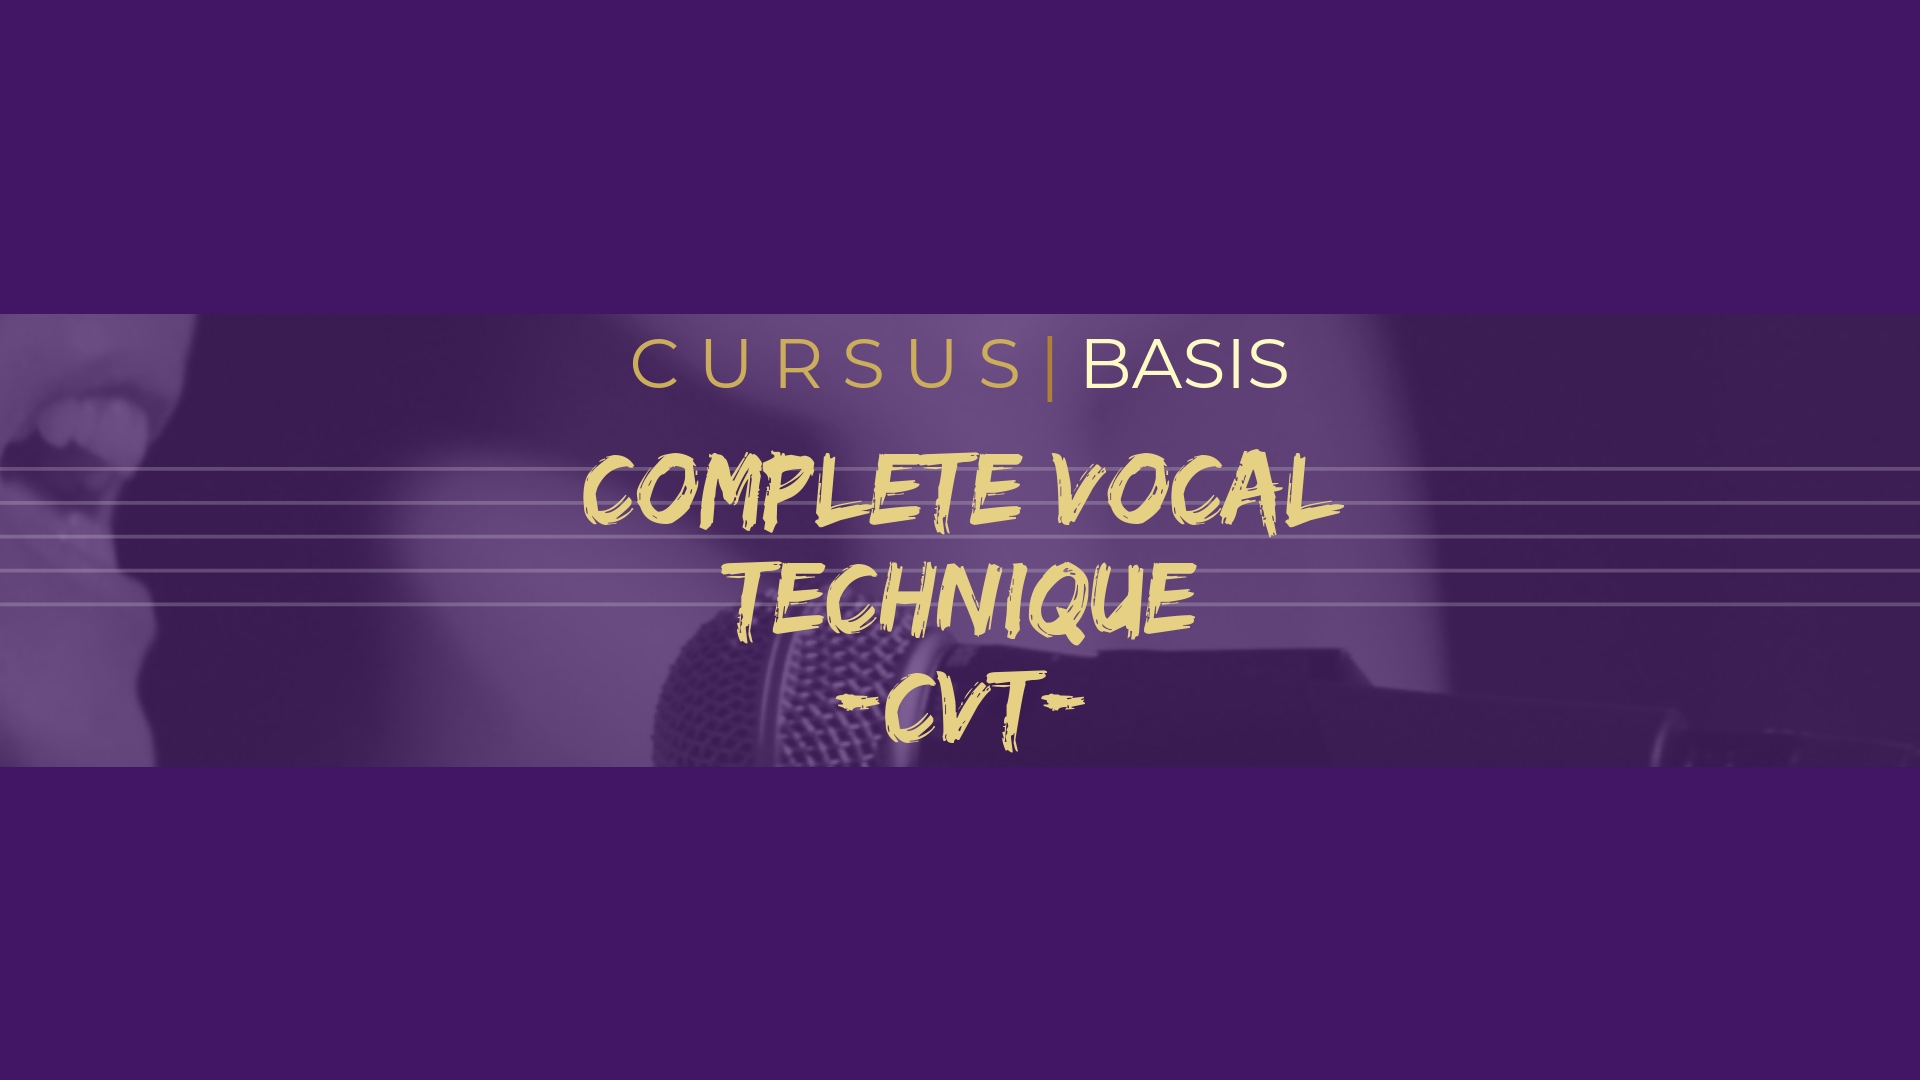 Cursus CVT basis (Complete Vocal Technique)